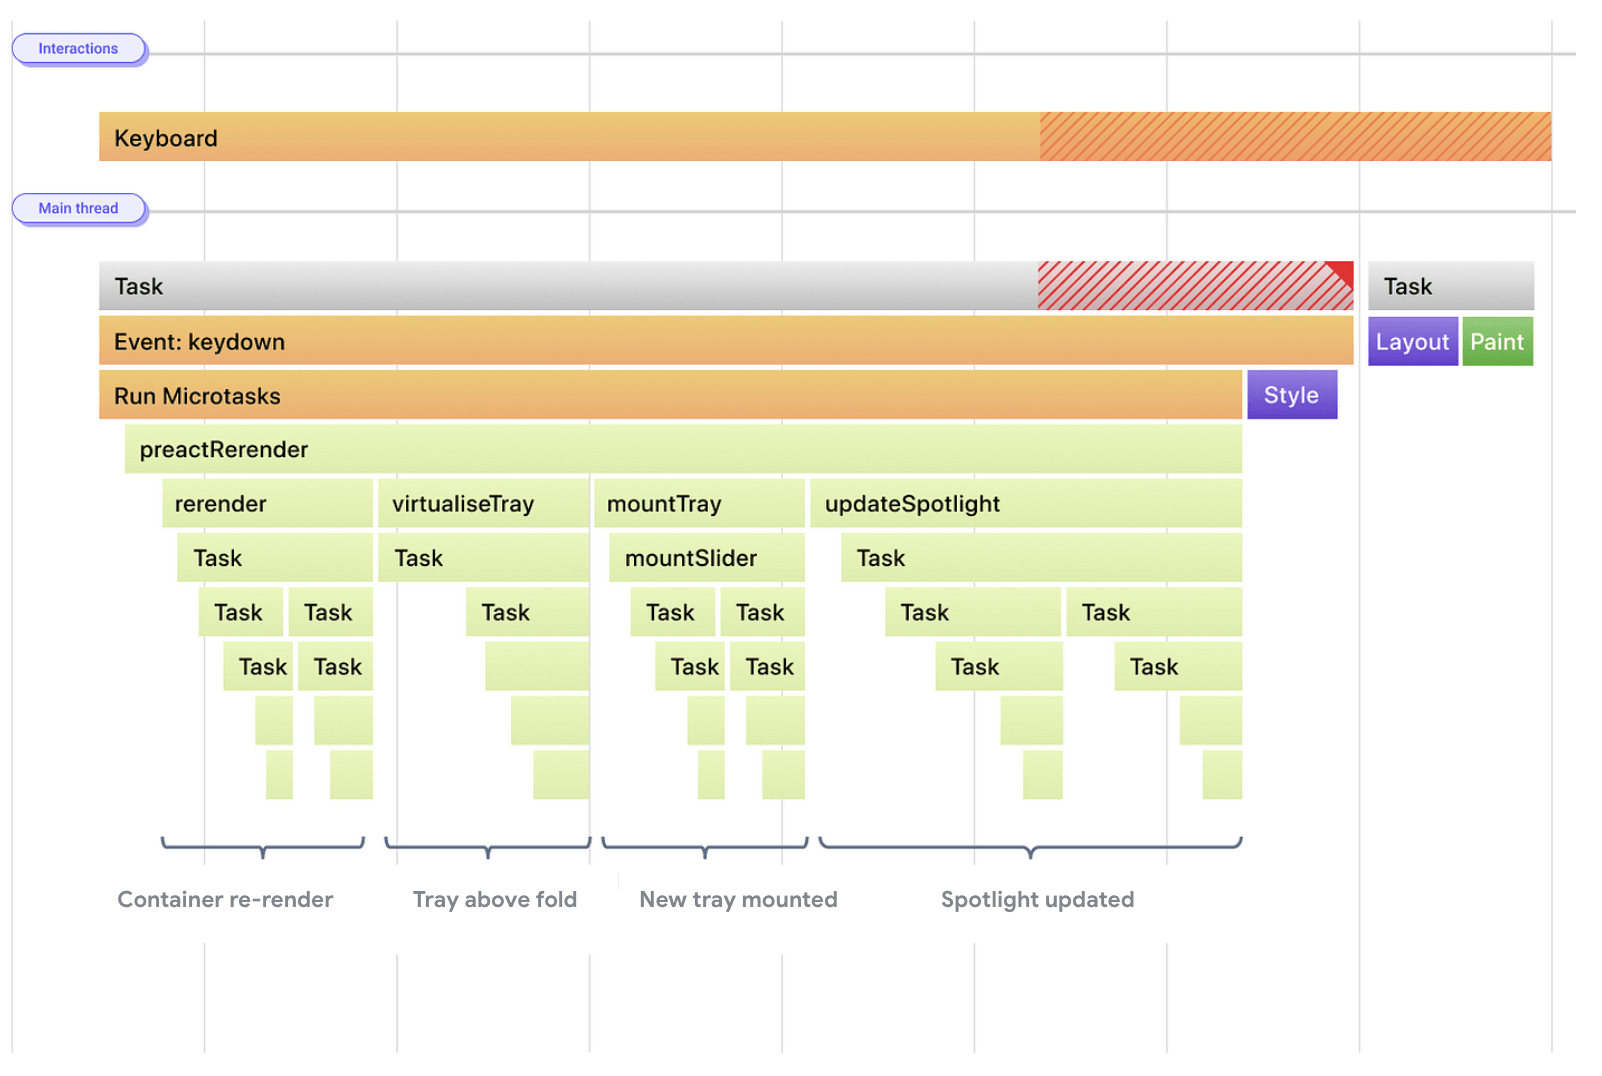 Una visualización estilizada de tareas para ejecutar controladores de eventos y actualizaciones de renderización. Las actualizaciones de renderización se posponen después de una sola tarea larga.